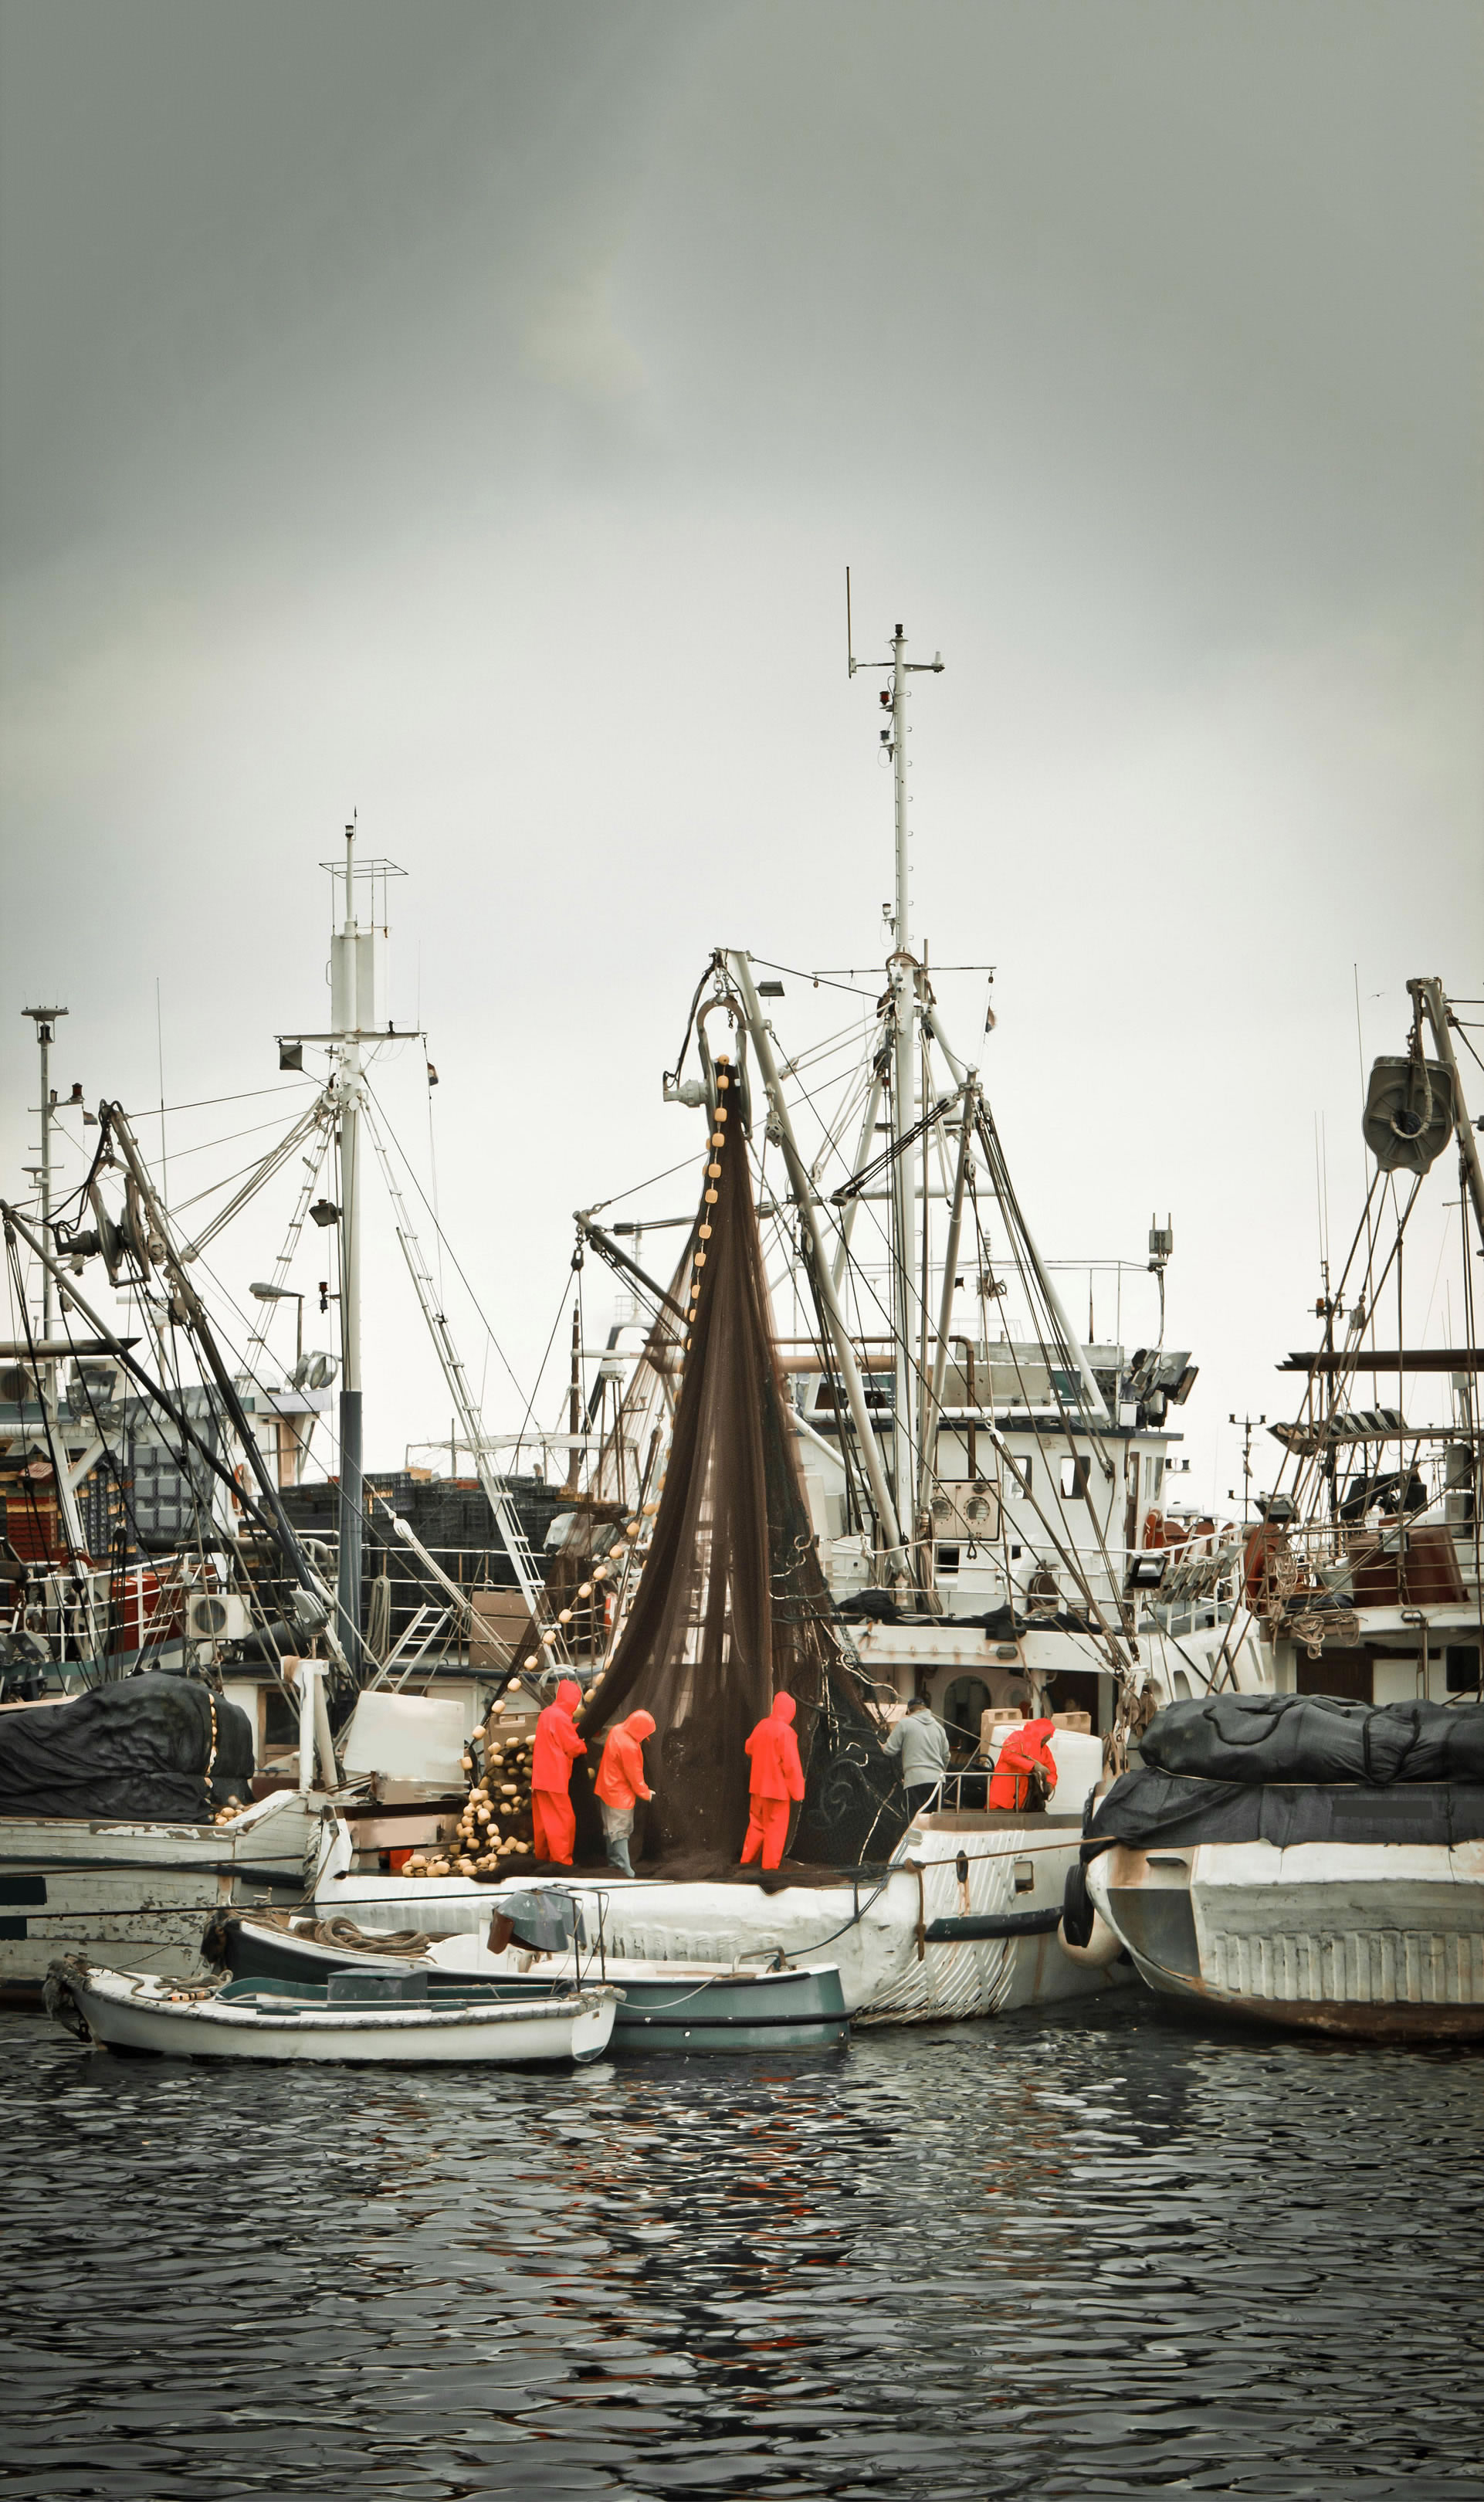 Ribari u ribarskim odijelima pregledavaju mrežu na koćarici među drugim brodicama u ribarskoj luci.